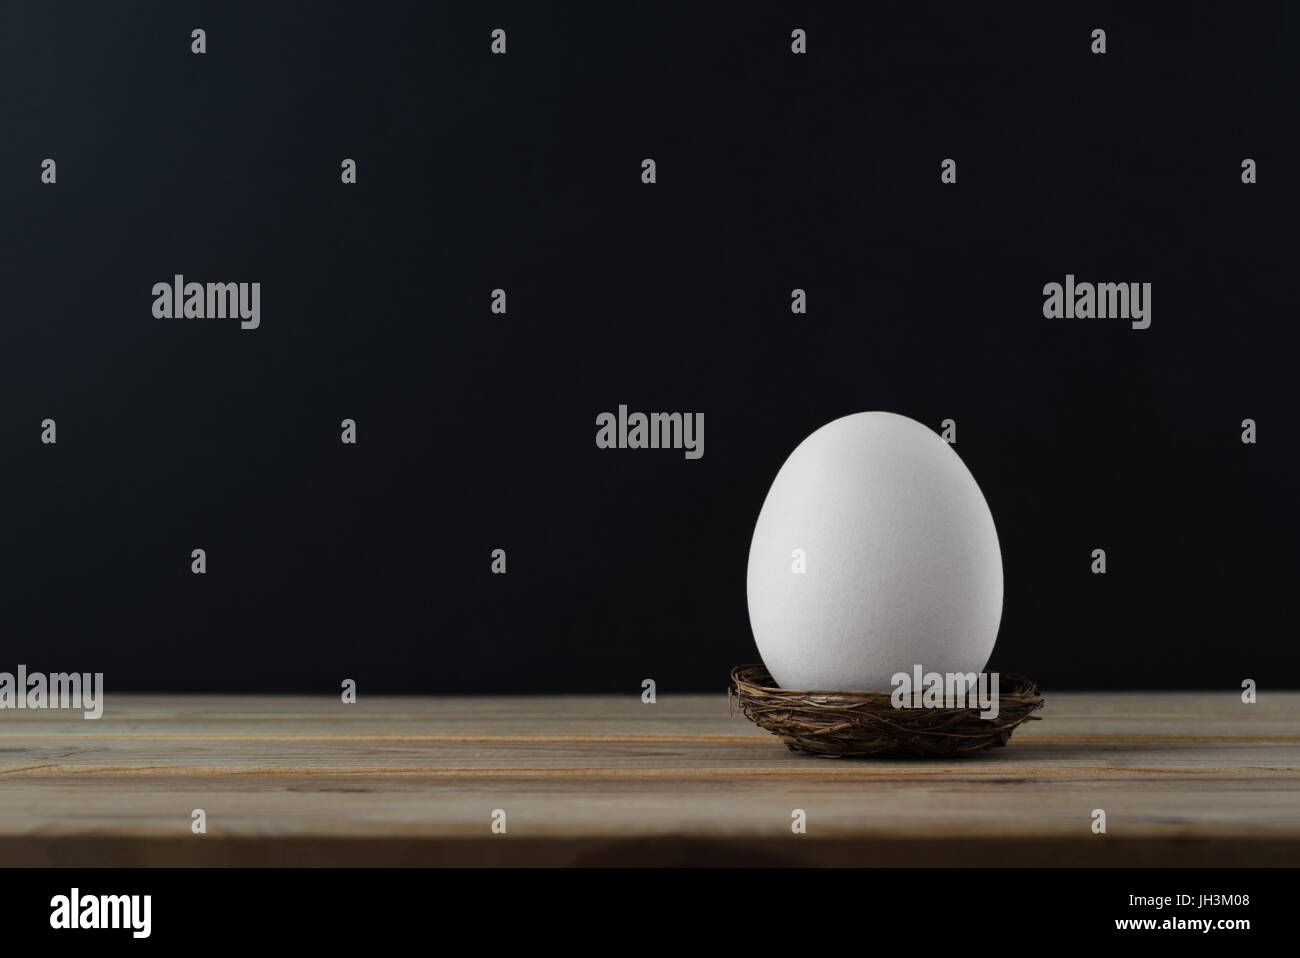 Eine aufrechte Henne-Ei (gebleicht) im kleinen Nest auf Holzbrett Tisch.  Schwarze Tafel Hintergrund Eingabefeld kopieren. Stockfoto